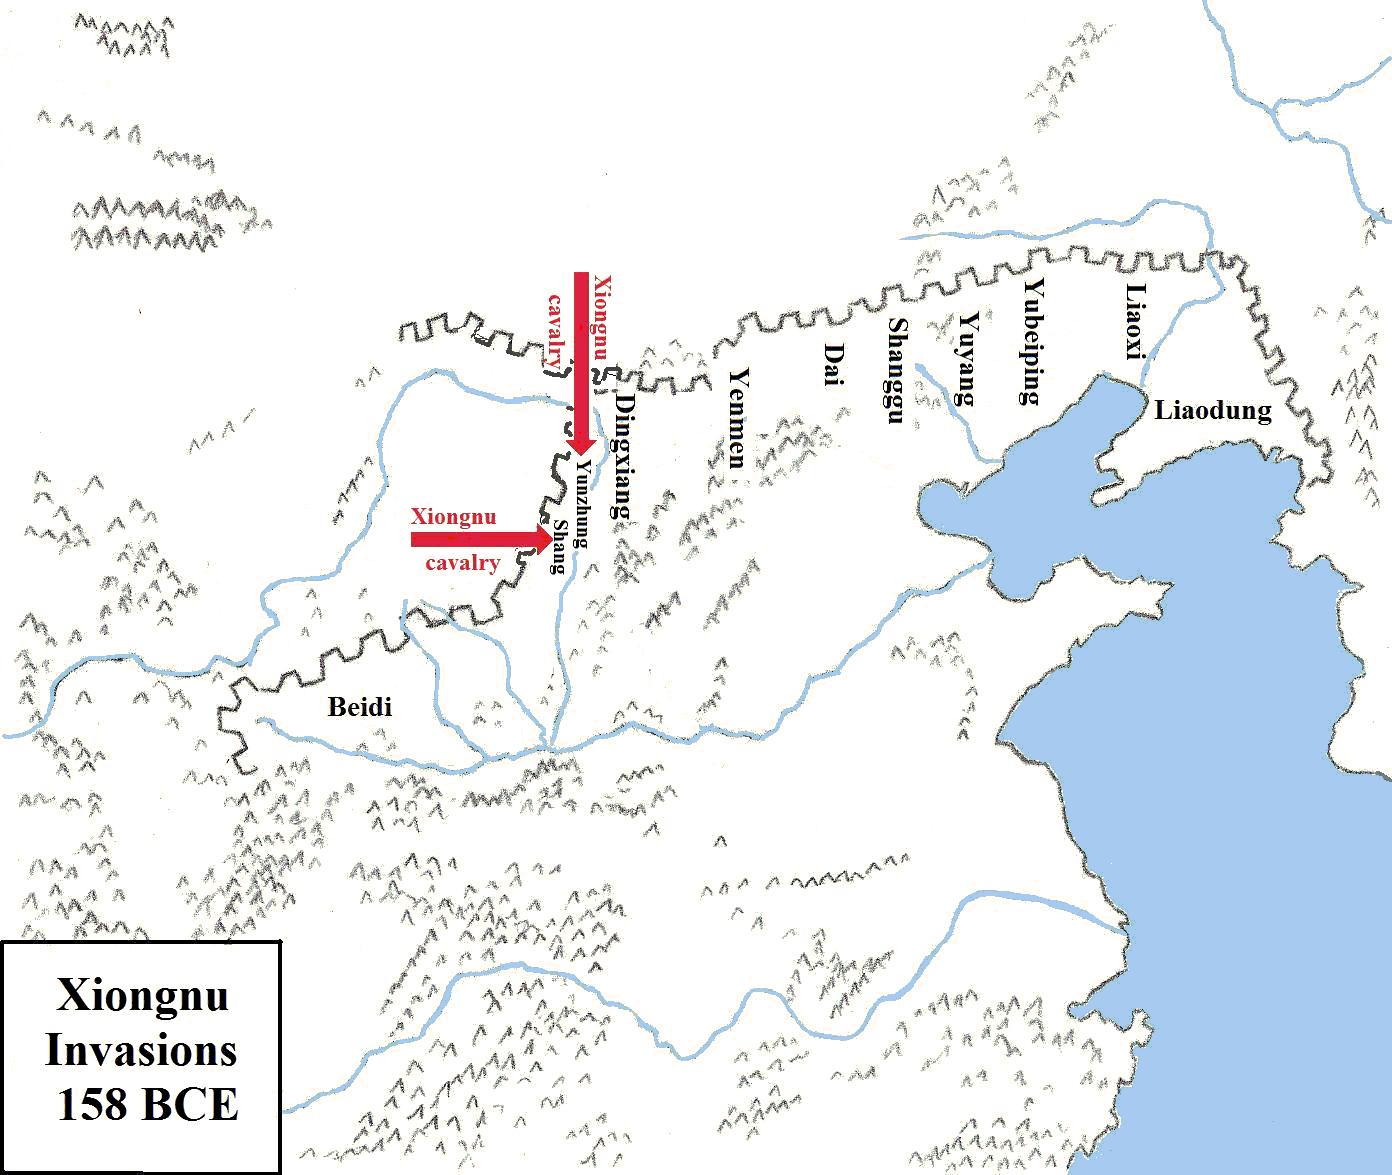 Xiongnu invasions in 158 BCE